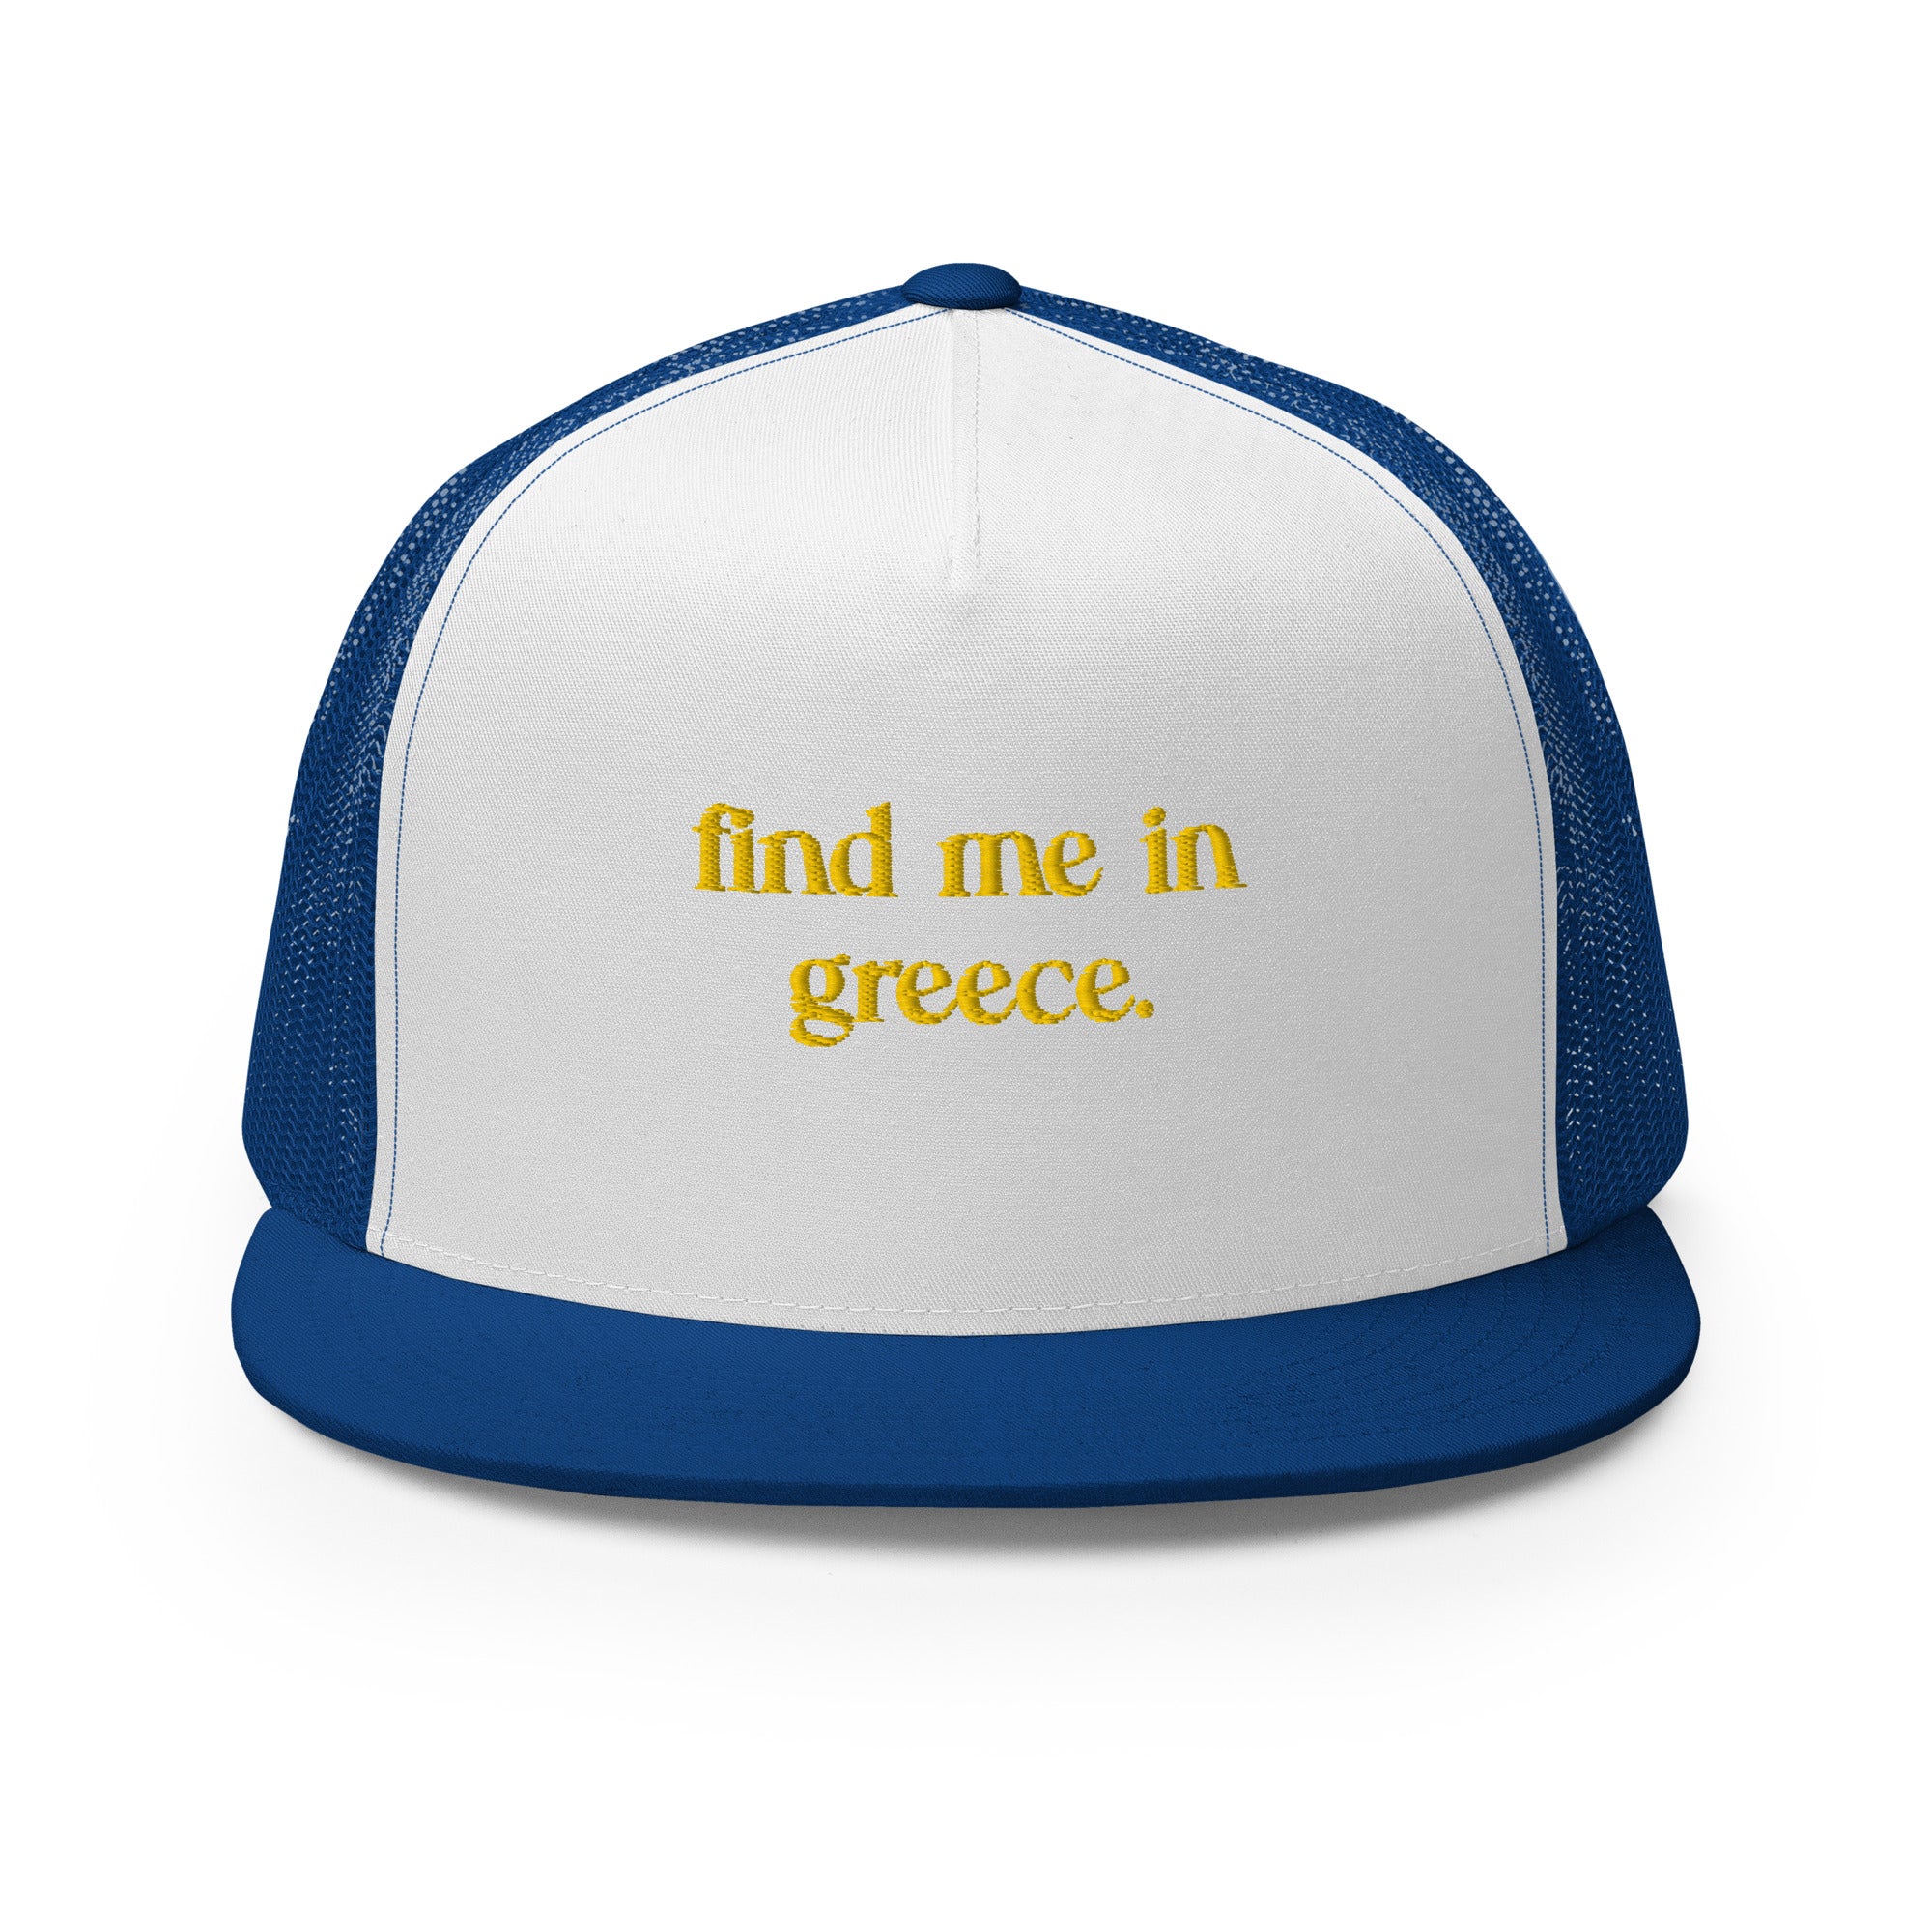 Find Me in Greece - Trucker Cap